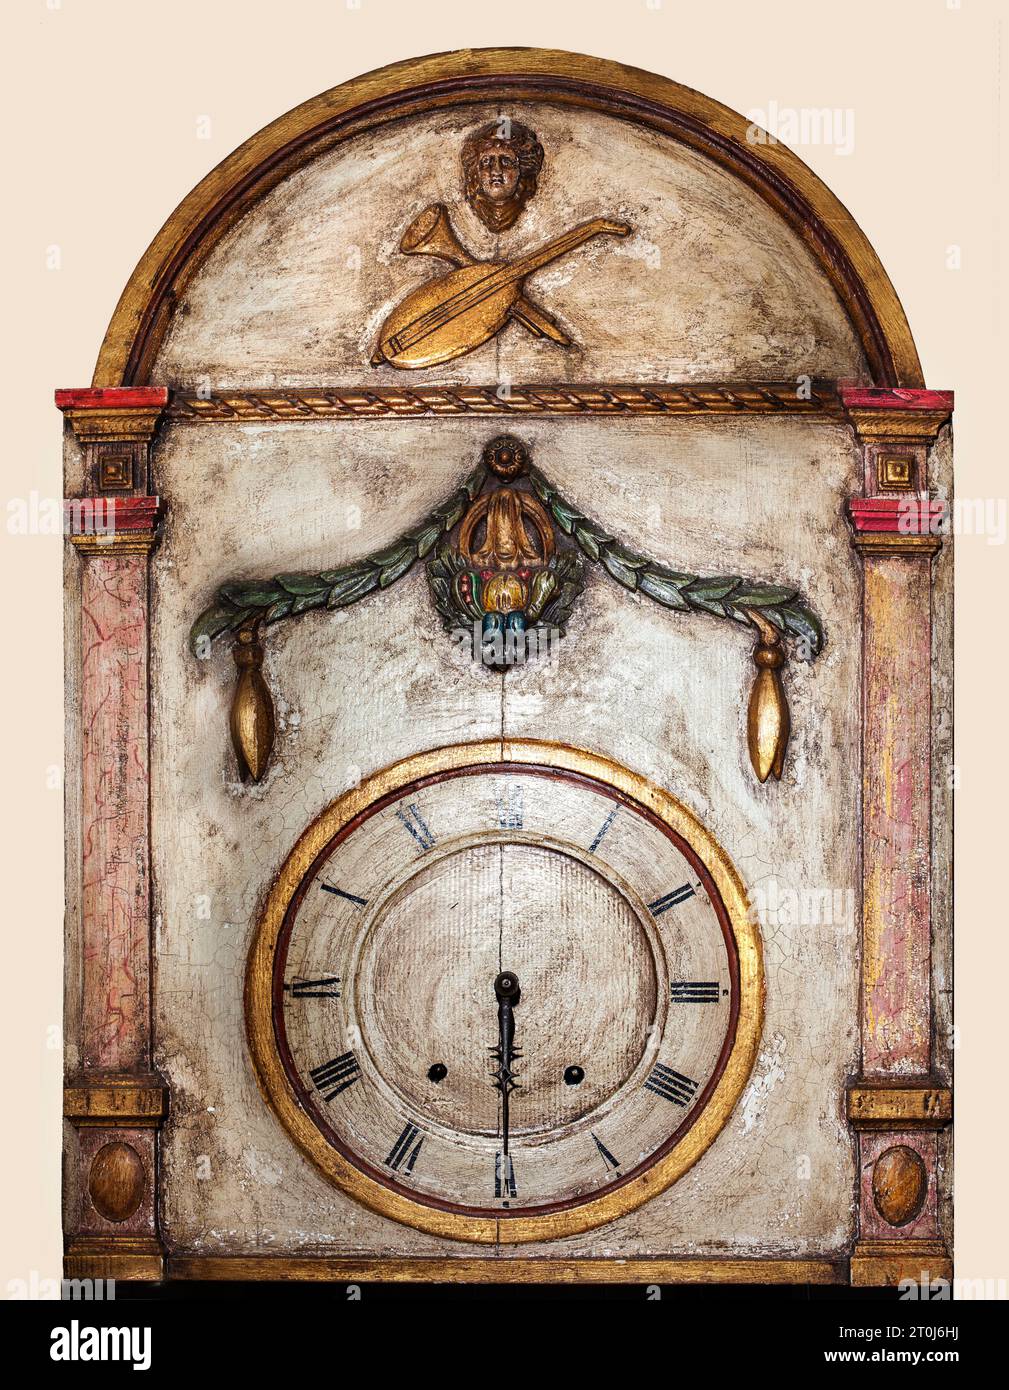 Une horloge musicale du 19e siècle, Musée de l'orgue Borgentreich, district de Höxter, Rhénanie du Nord-Westphalie, Allemagne, Europe Banque D'Images